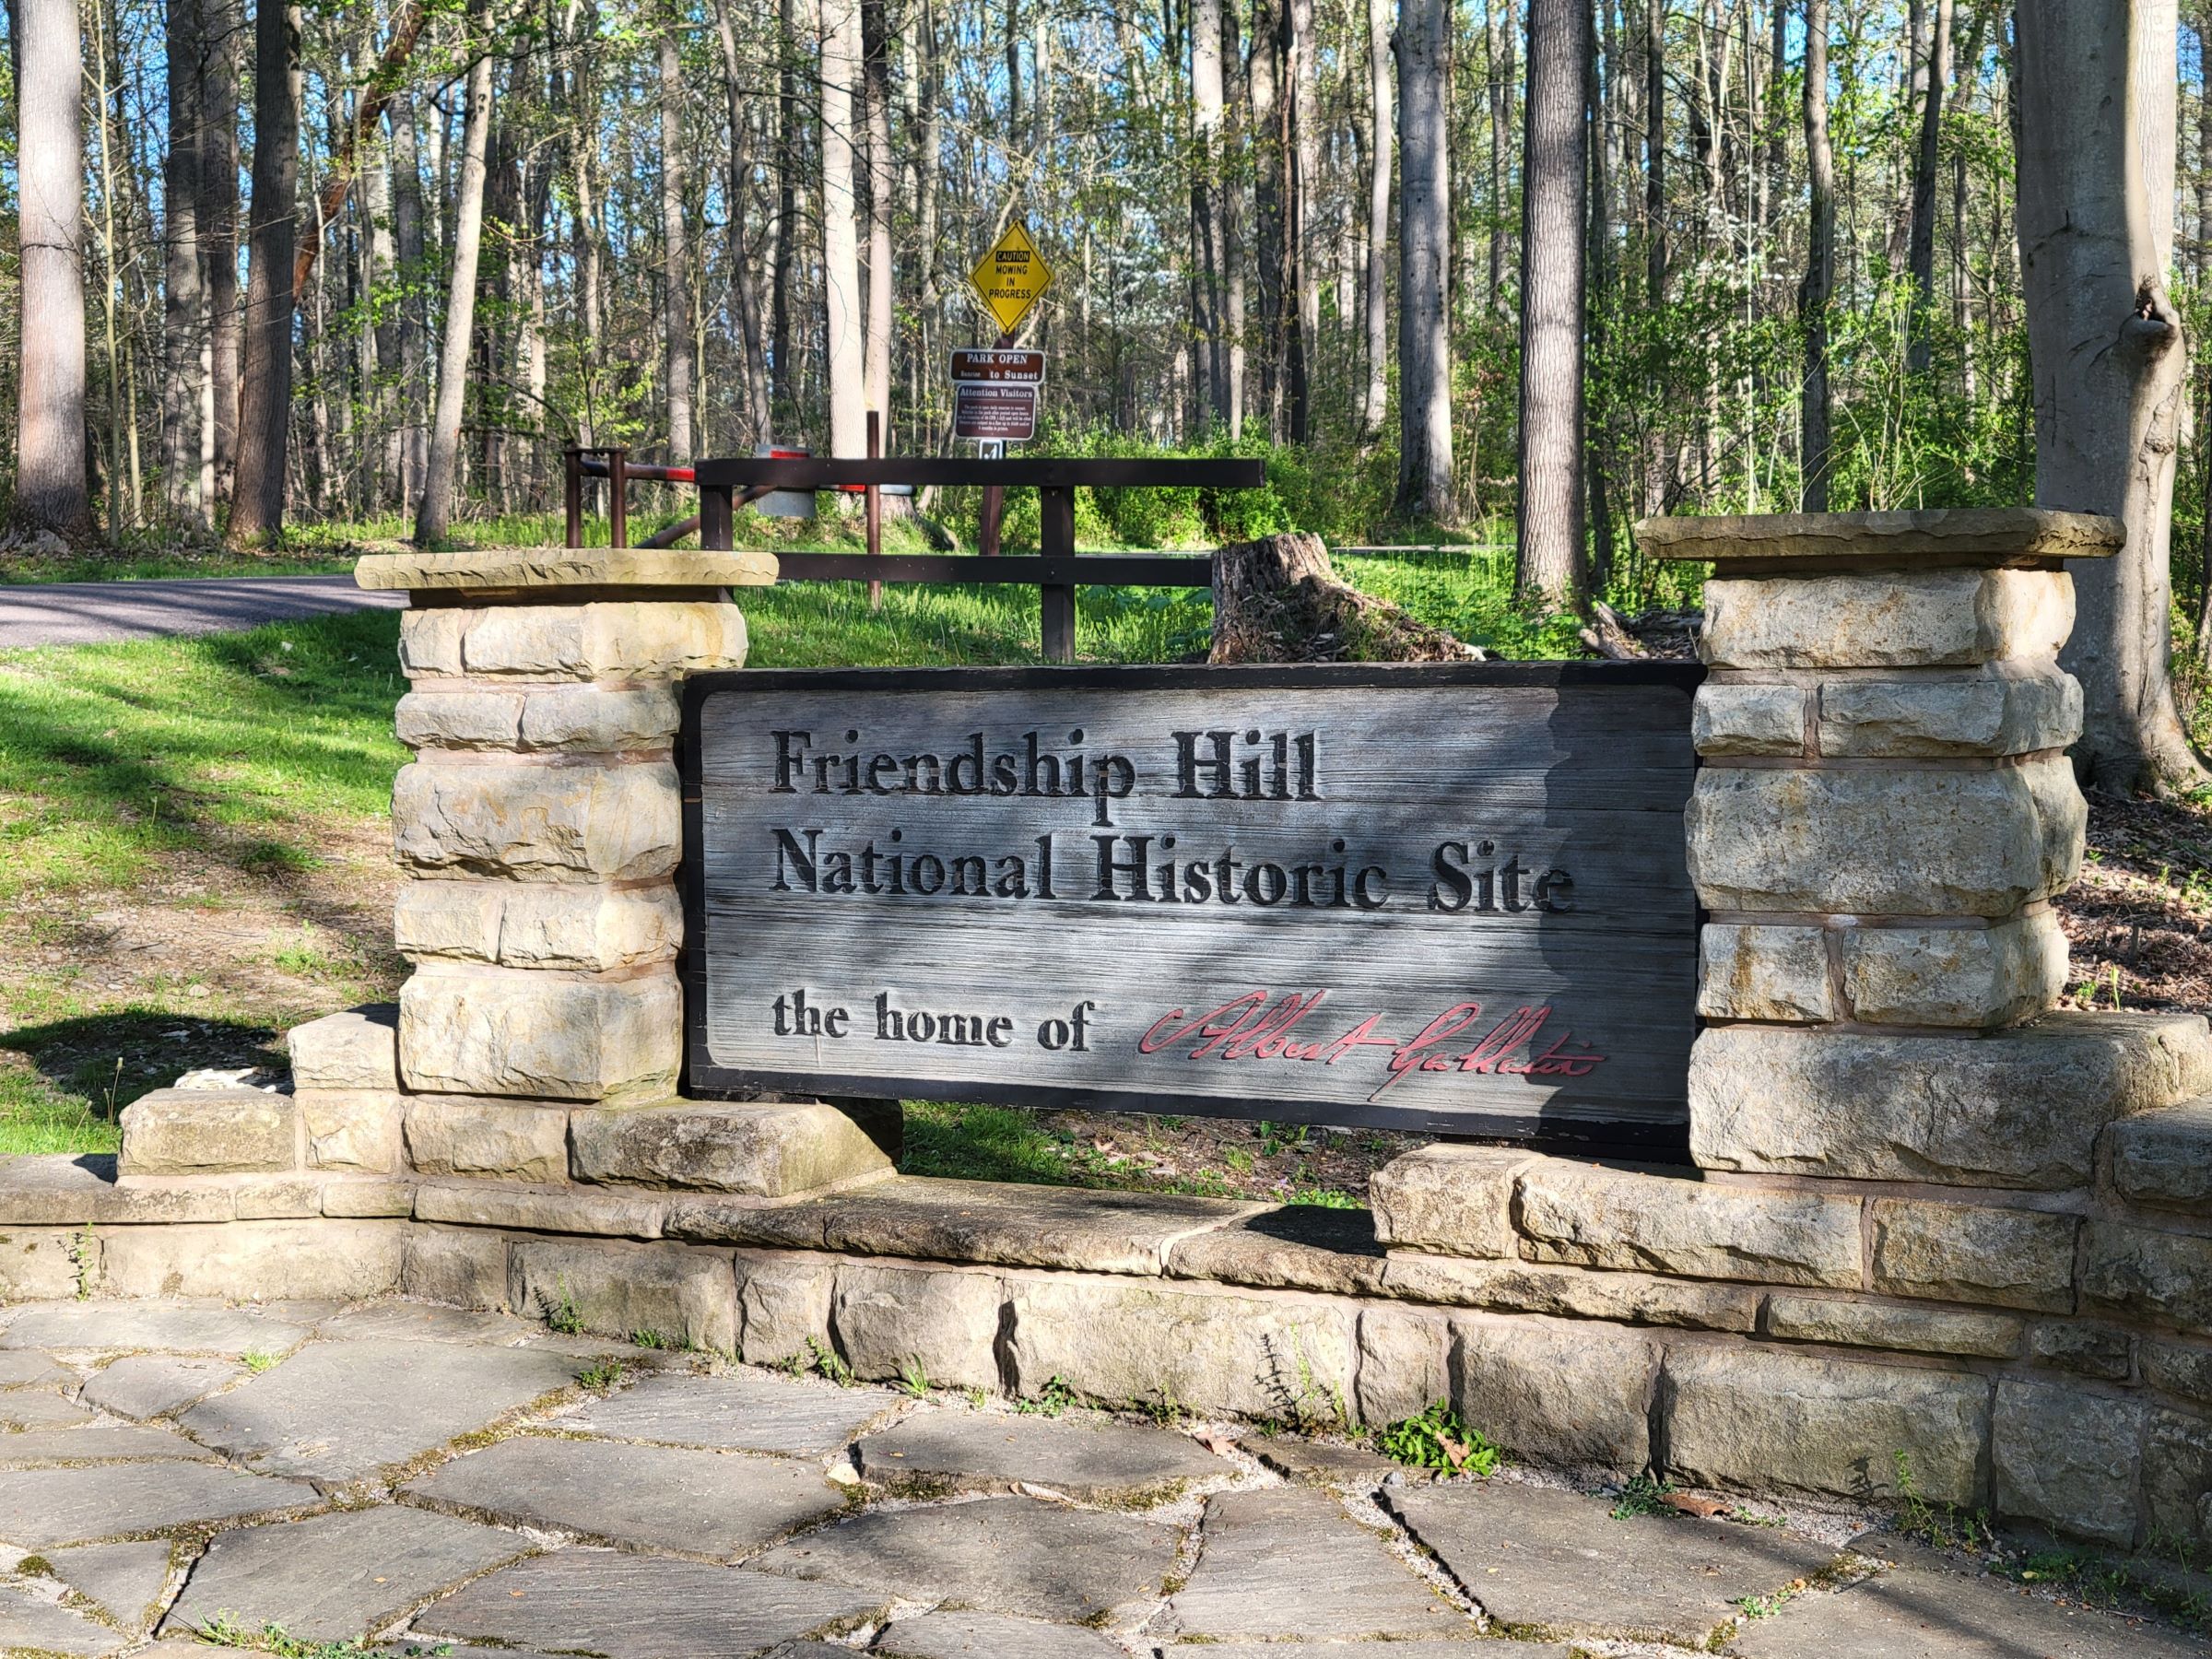 앨버트 갤러틴을 아시나요? 펜실베니아의 프렌드쉽힐 국립사적지(Friendship Hill National Historic Site)